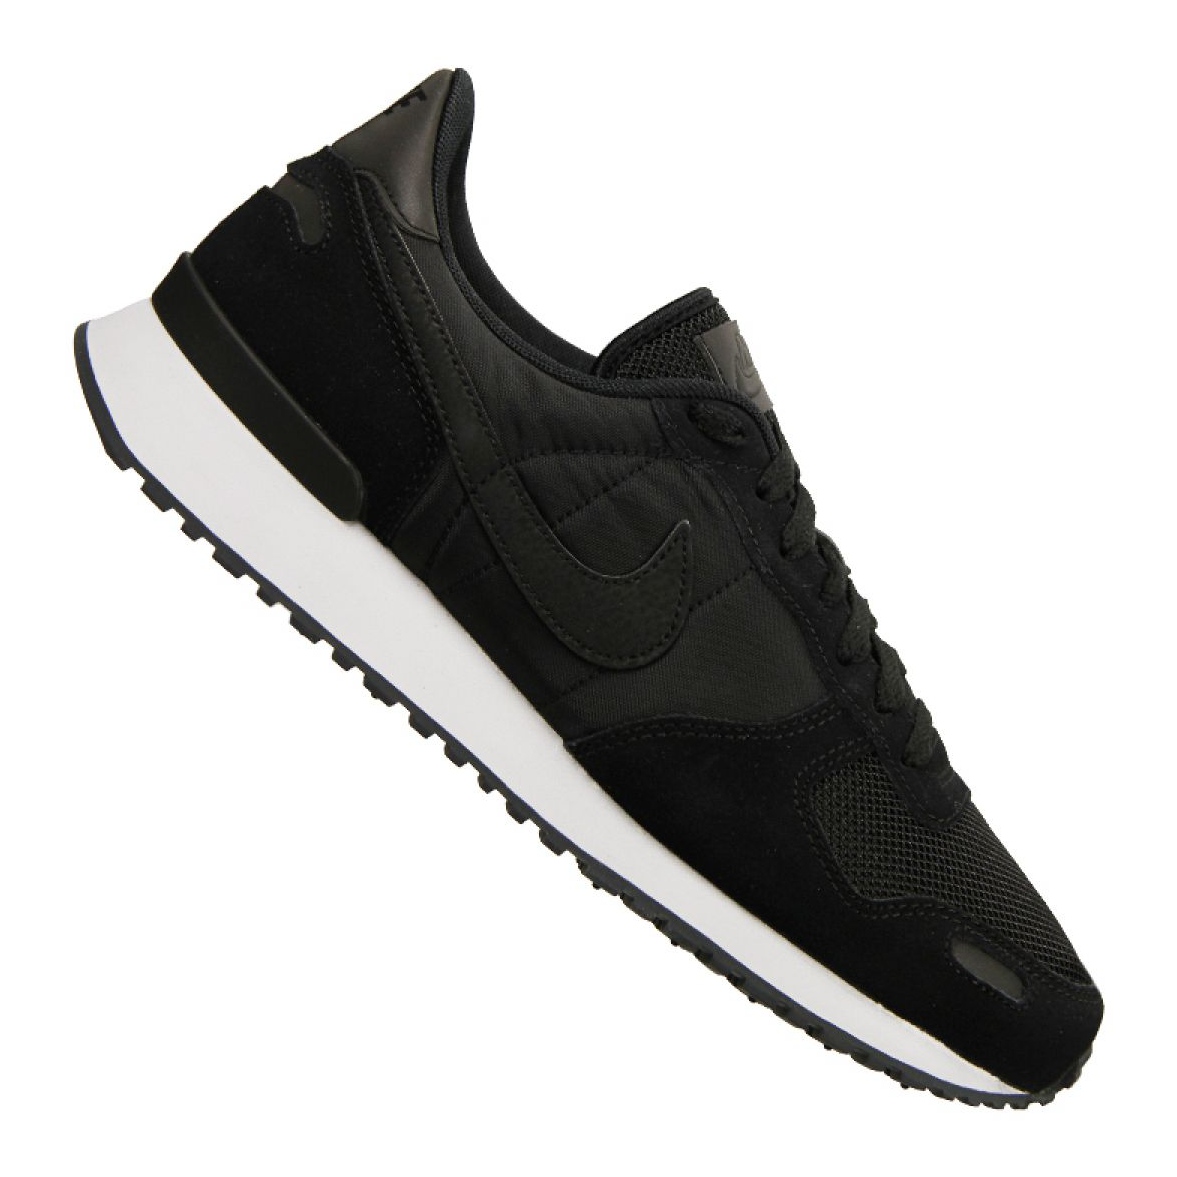 progenie menos pecado Nike Air Vortex M 903896-012 shoes black - KeeShoes